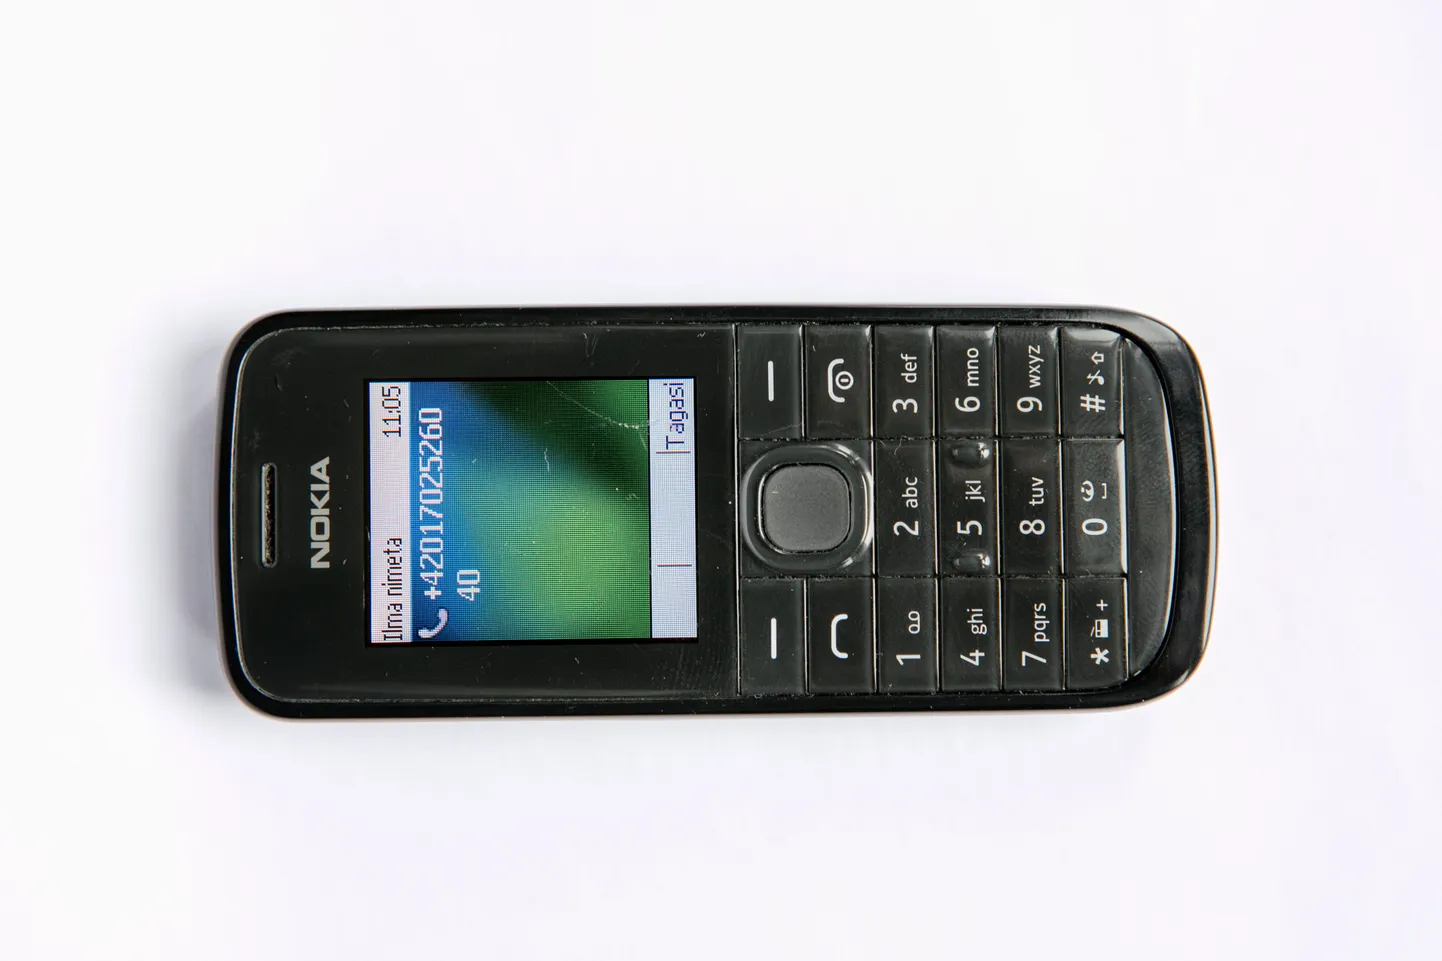 Nokia mobiiltelefon. Foto on illustratiivne